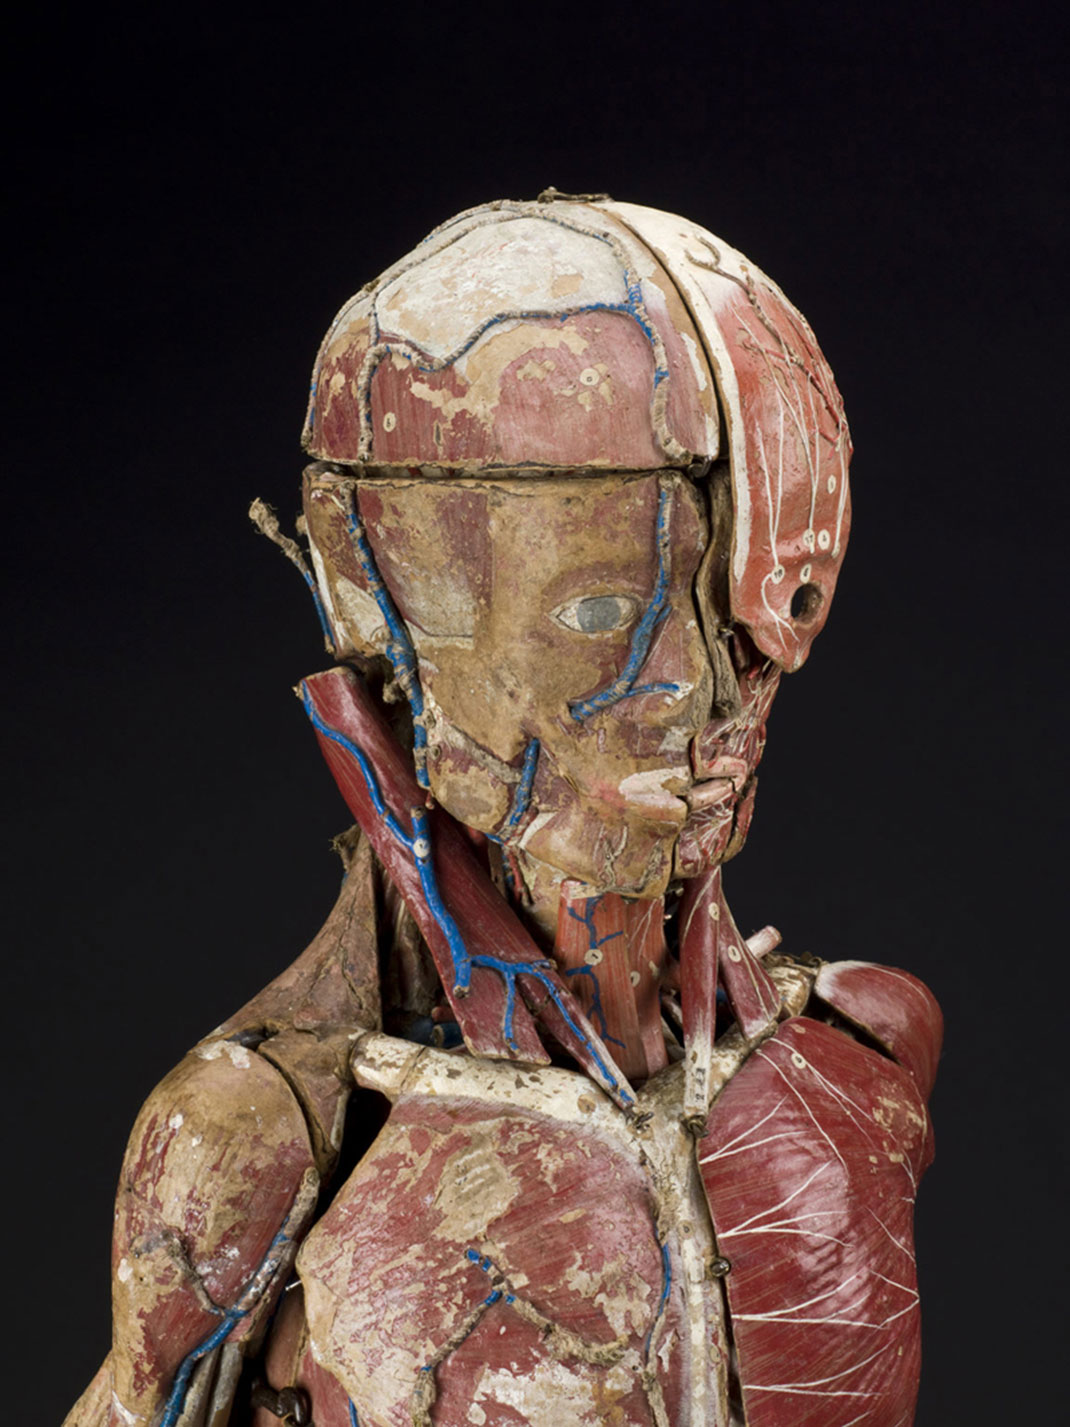 14-modele-anatomique-papier-mache